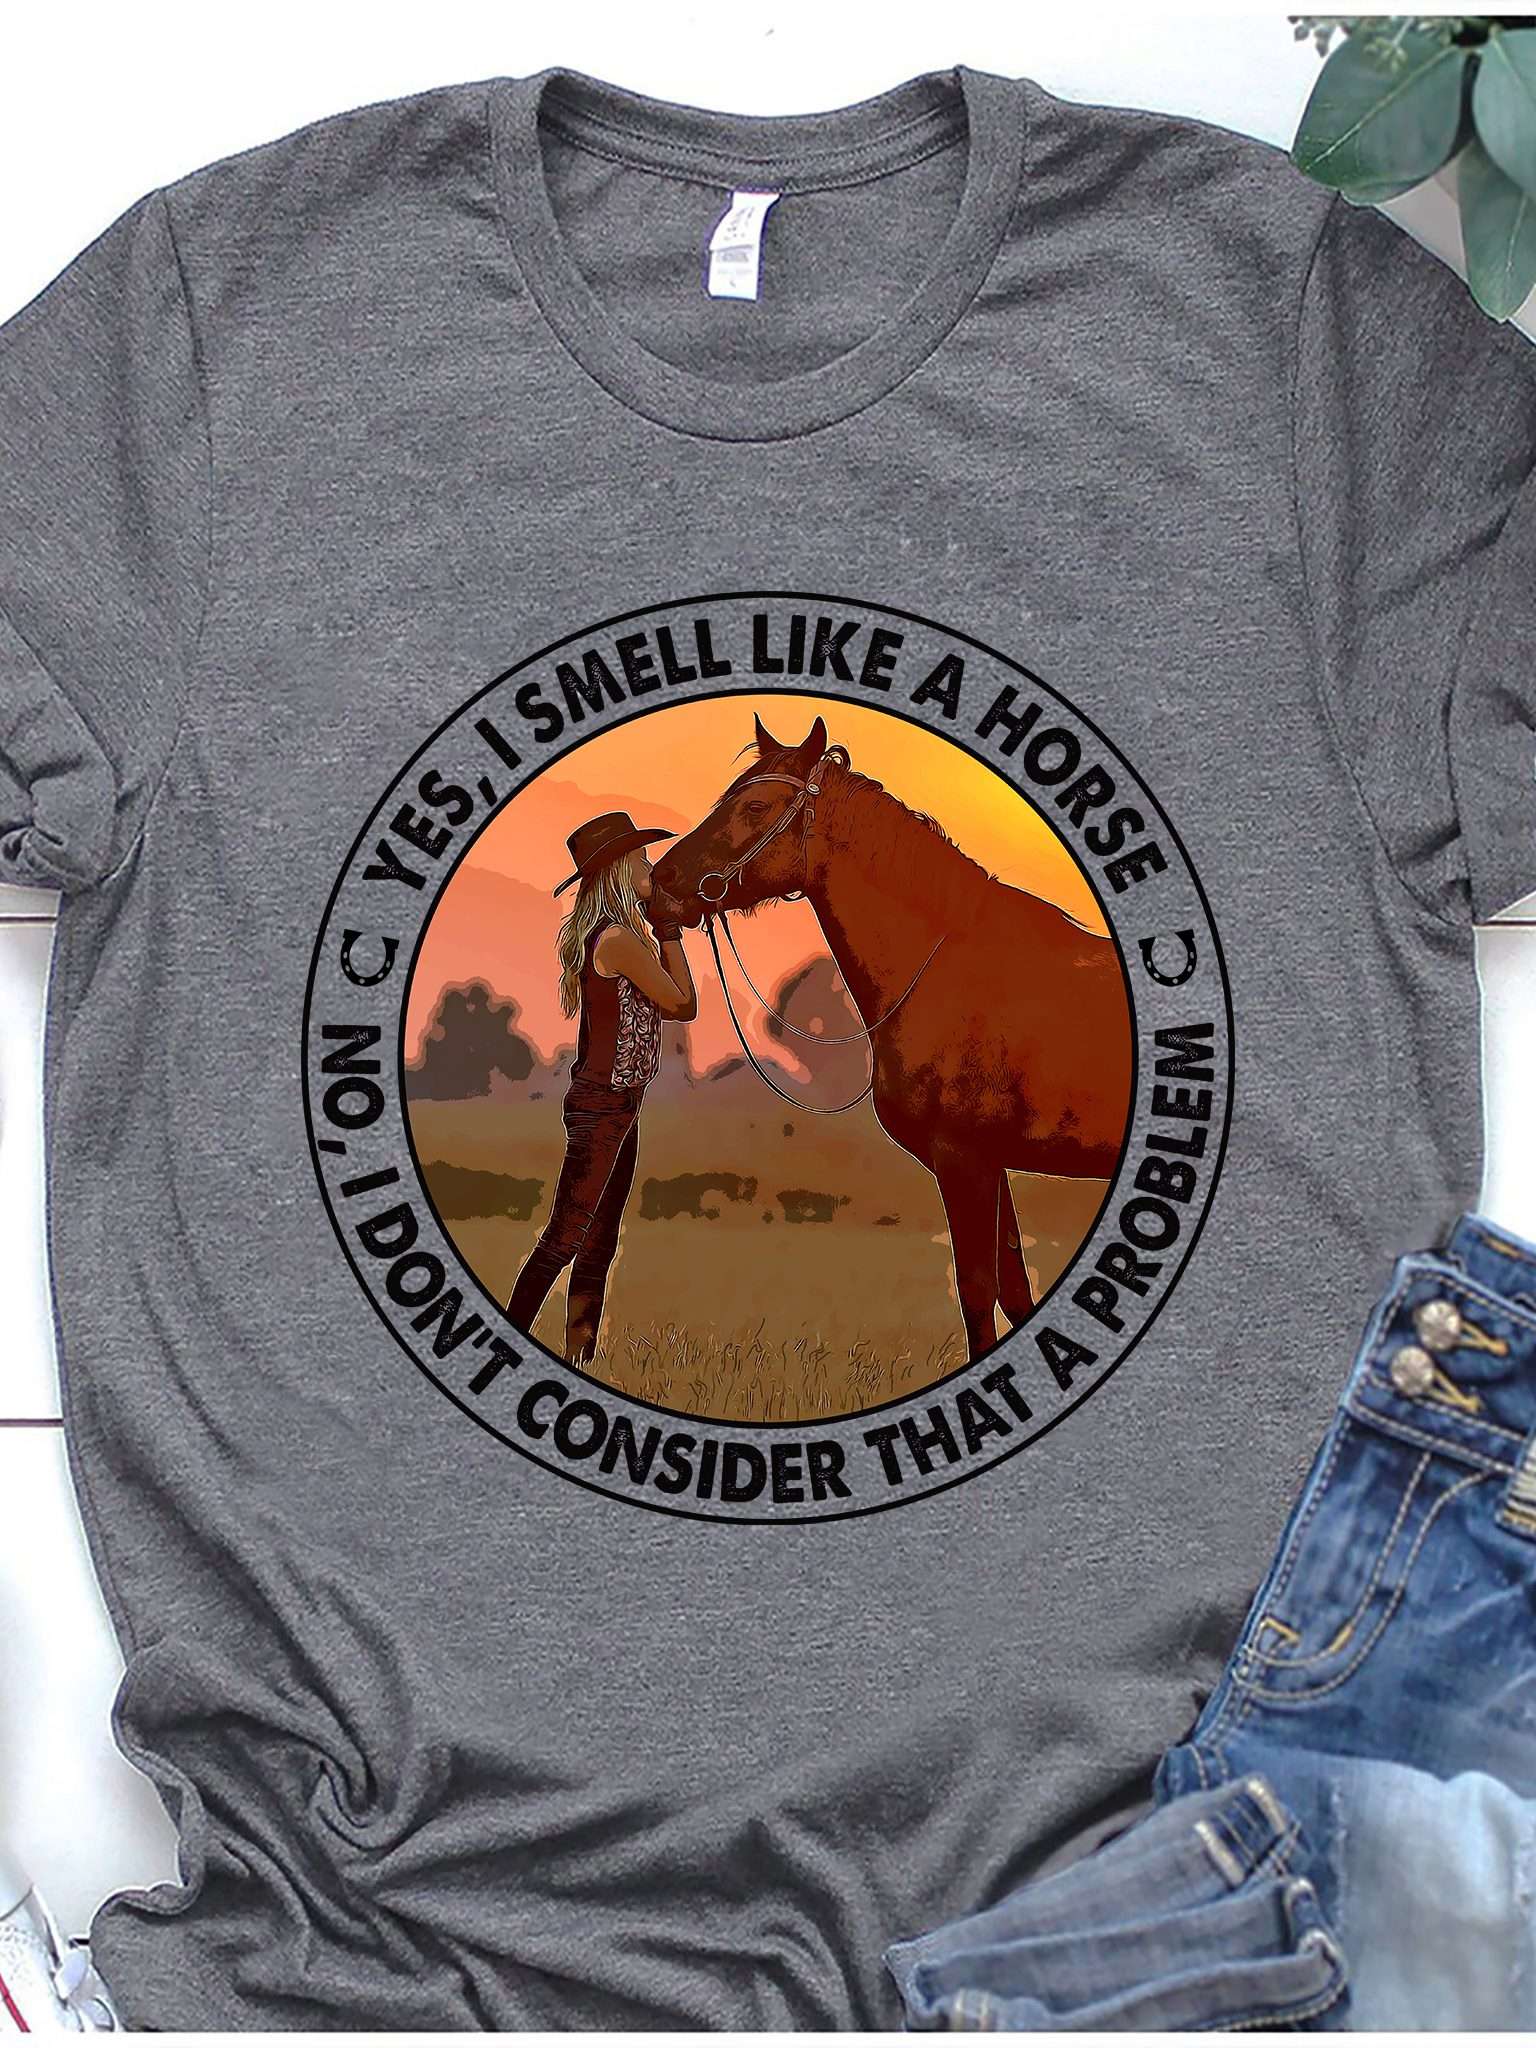 Yes I smell like a horse - Girl loves horses, barrel girl